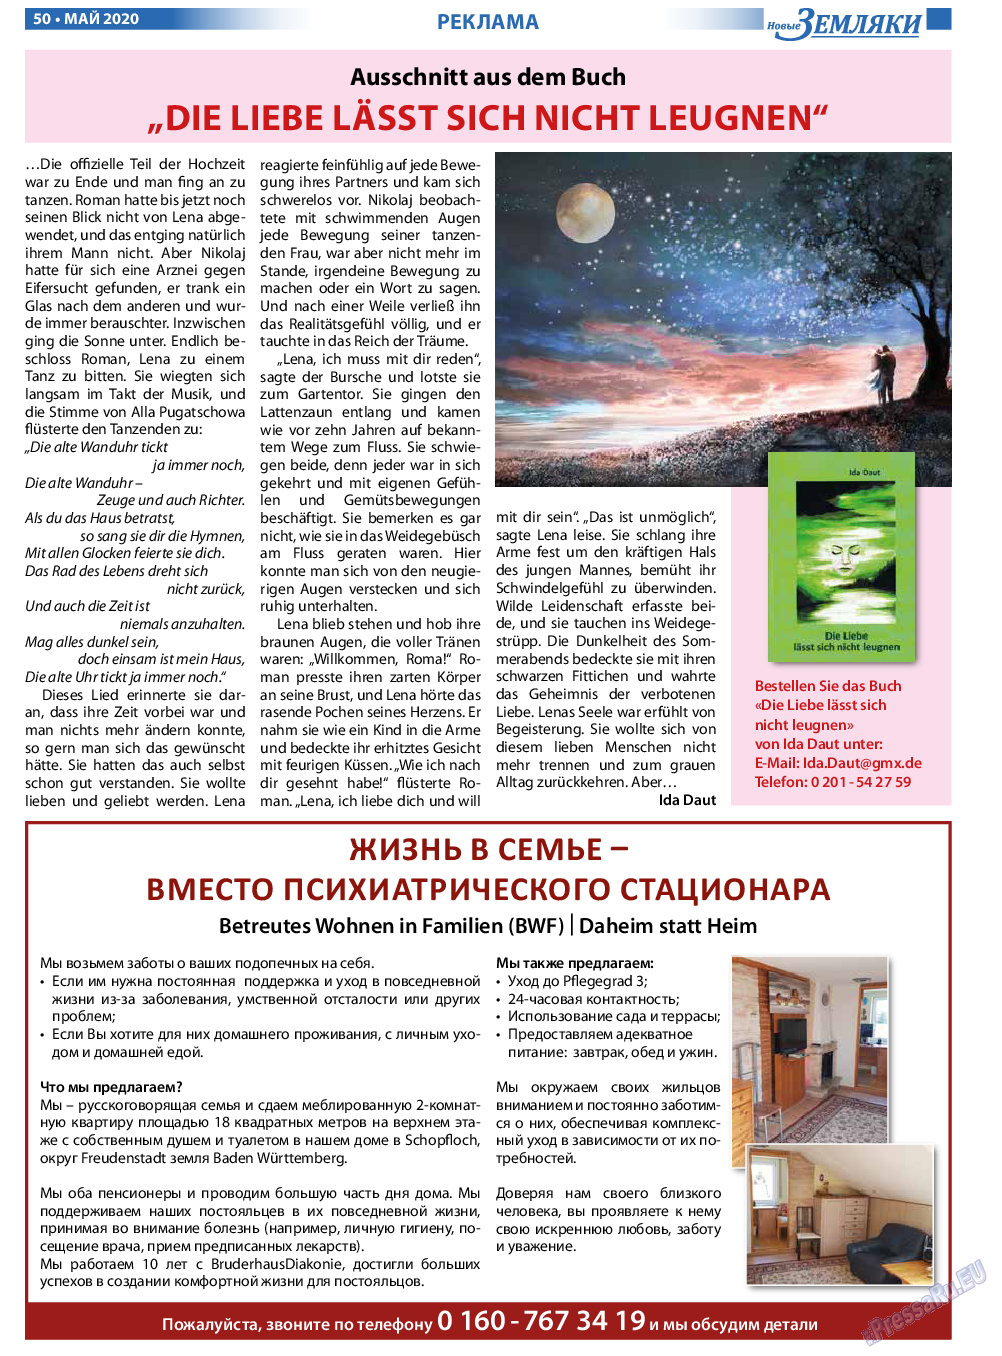 Новые Земляки, газета. 2020 №5 стр.50